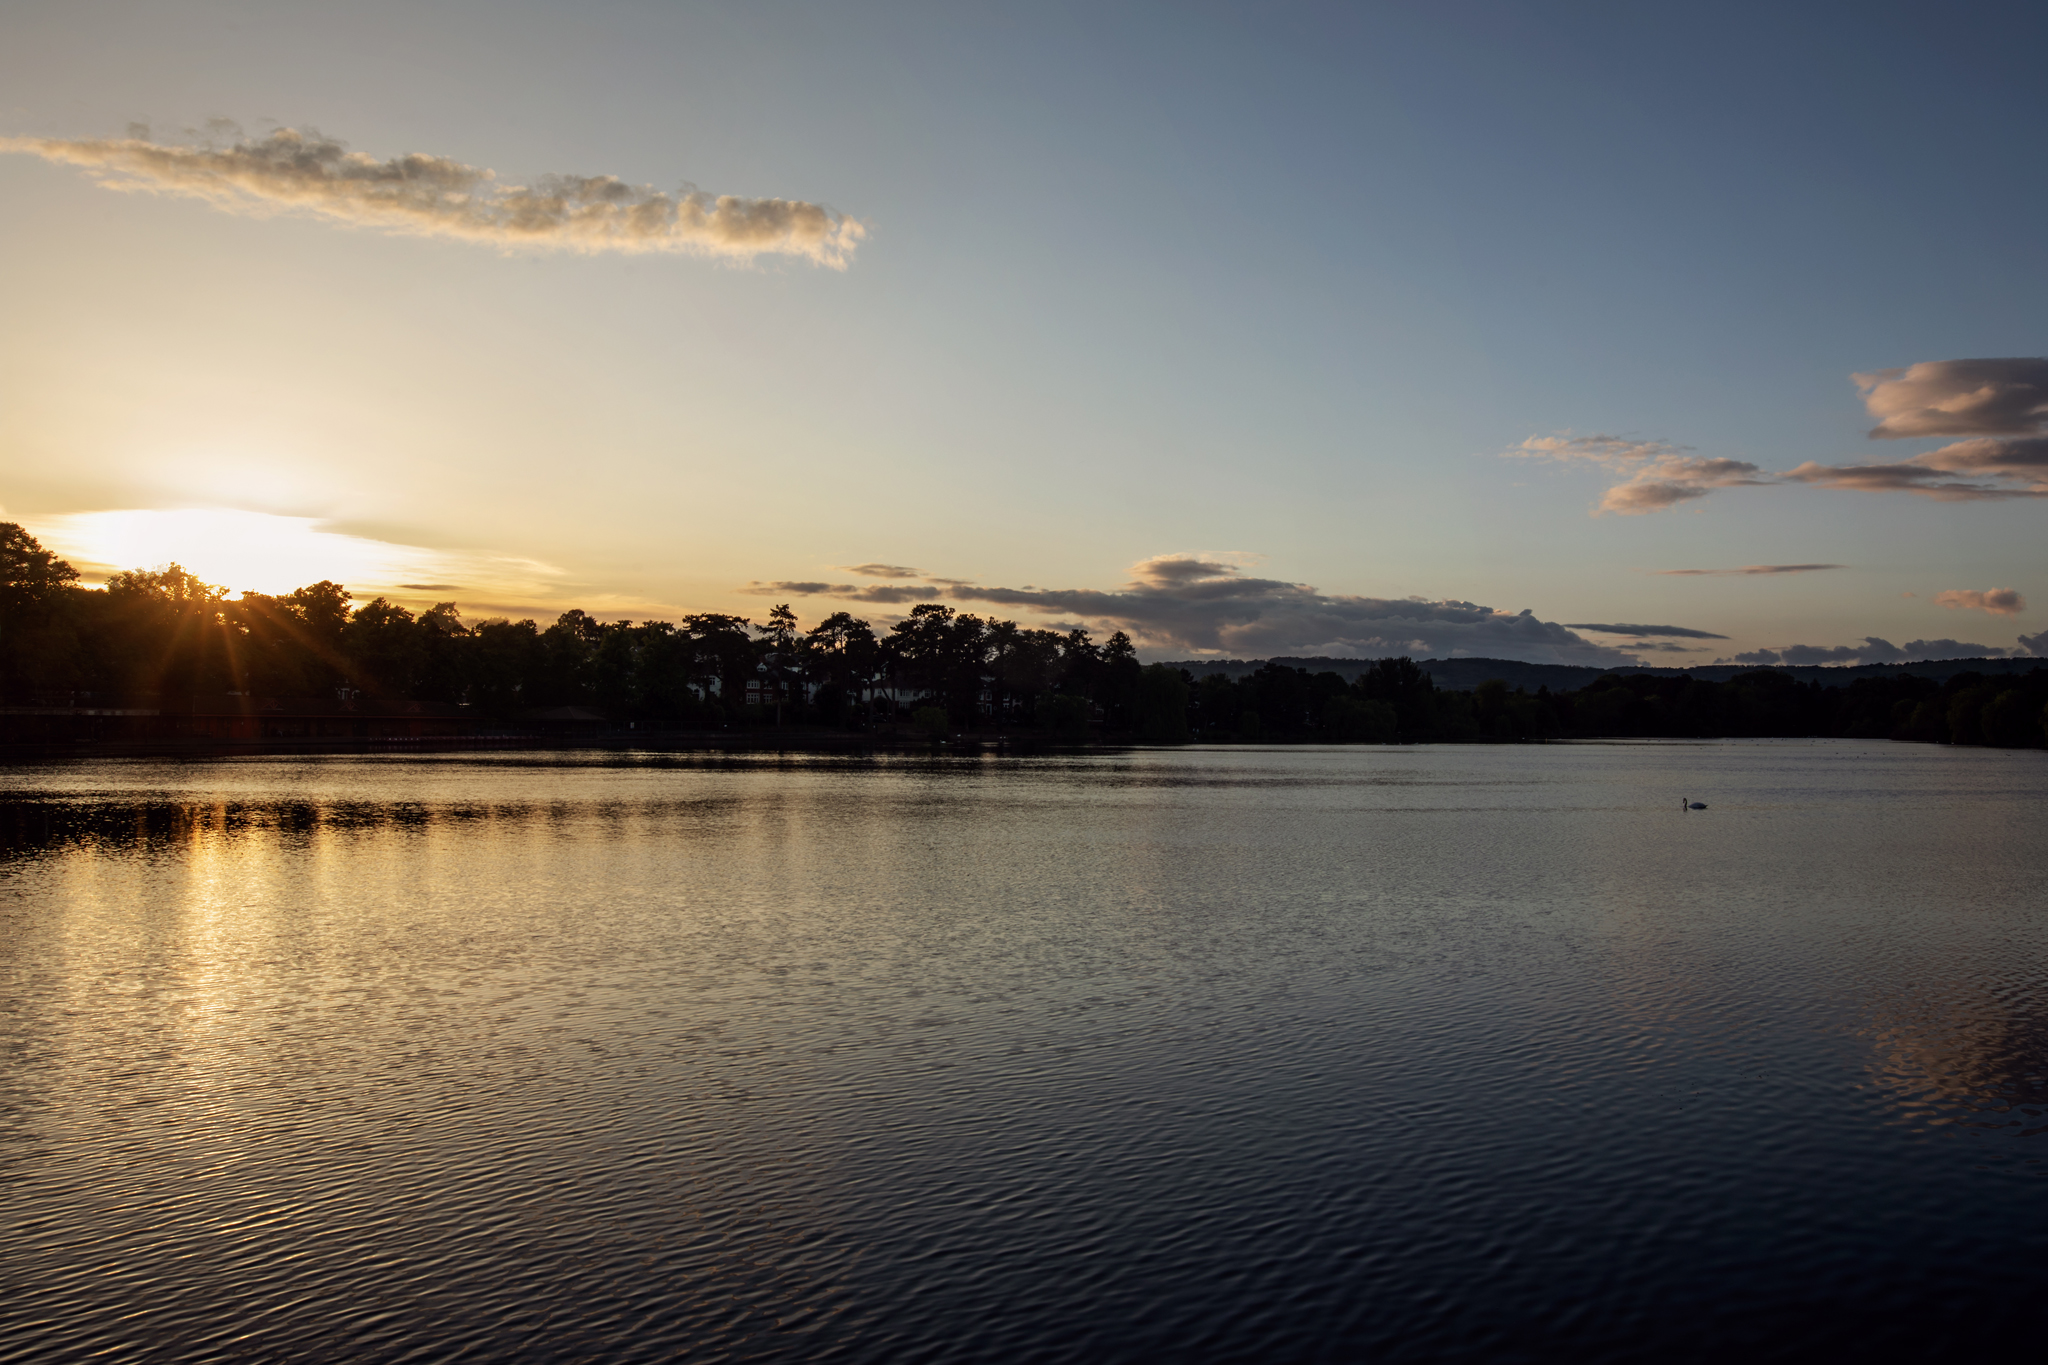 Landscape Composition Sunset over lake